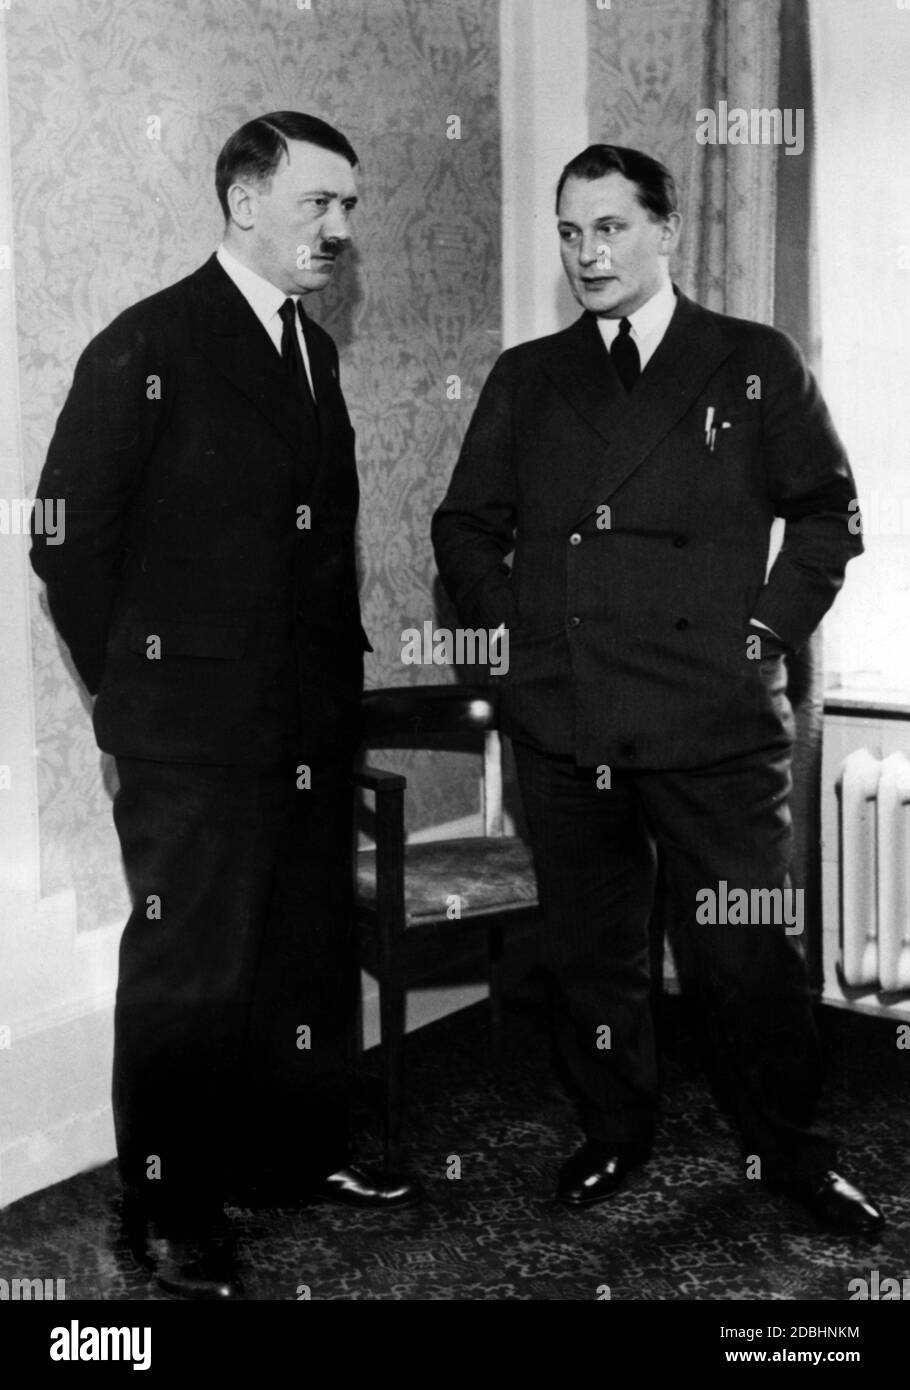 Adolf Hitler, insieme a Hermann Goering, attende una delegazione di giornalisti stranieri al Kaiserhof Hotel di Berlino, che ha informato sulle sue posizioni in politica estera. Foto Stock